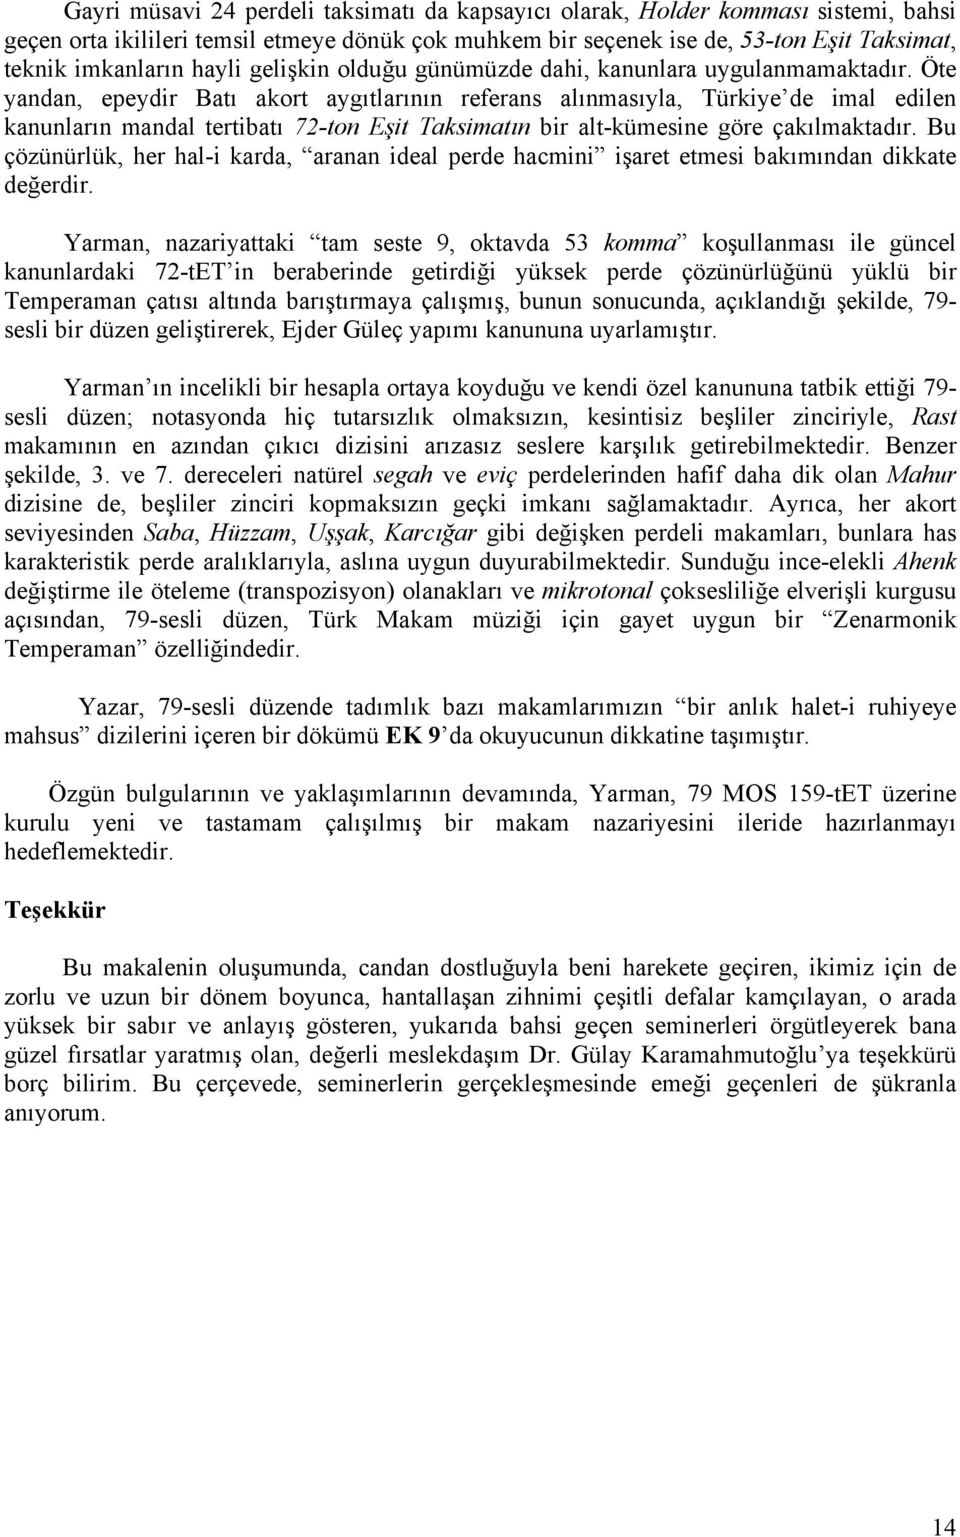 Öte yandan, epeydir Batı akort aygıtlarının referans alınmasıyla, Türkiye de imal edilen kanunların mandal tertibatı 72-ton Eşit Taksimatın bir alt-kümesine göre çakılmaktadır.